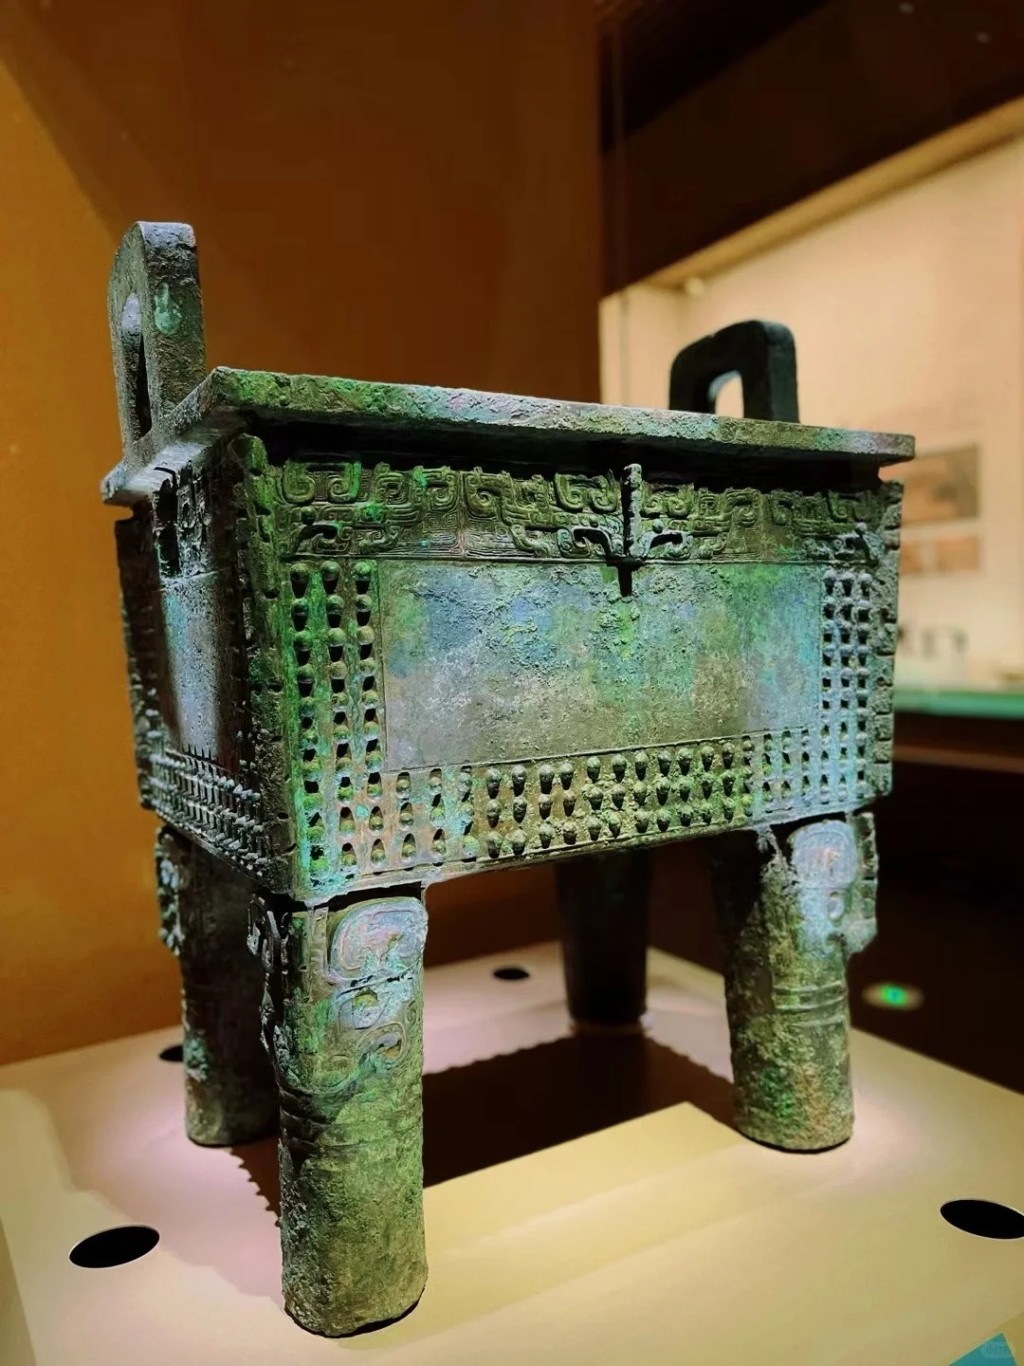 殷墟博物館新館將展出青銅器、陶器、玉器、甲骨等文物近4,000件套。小紅書